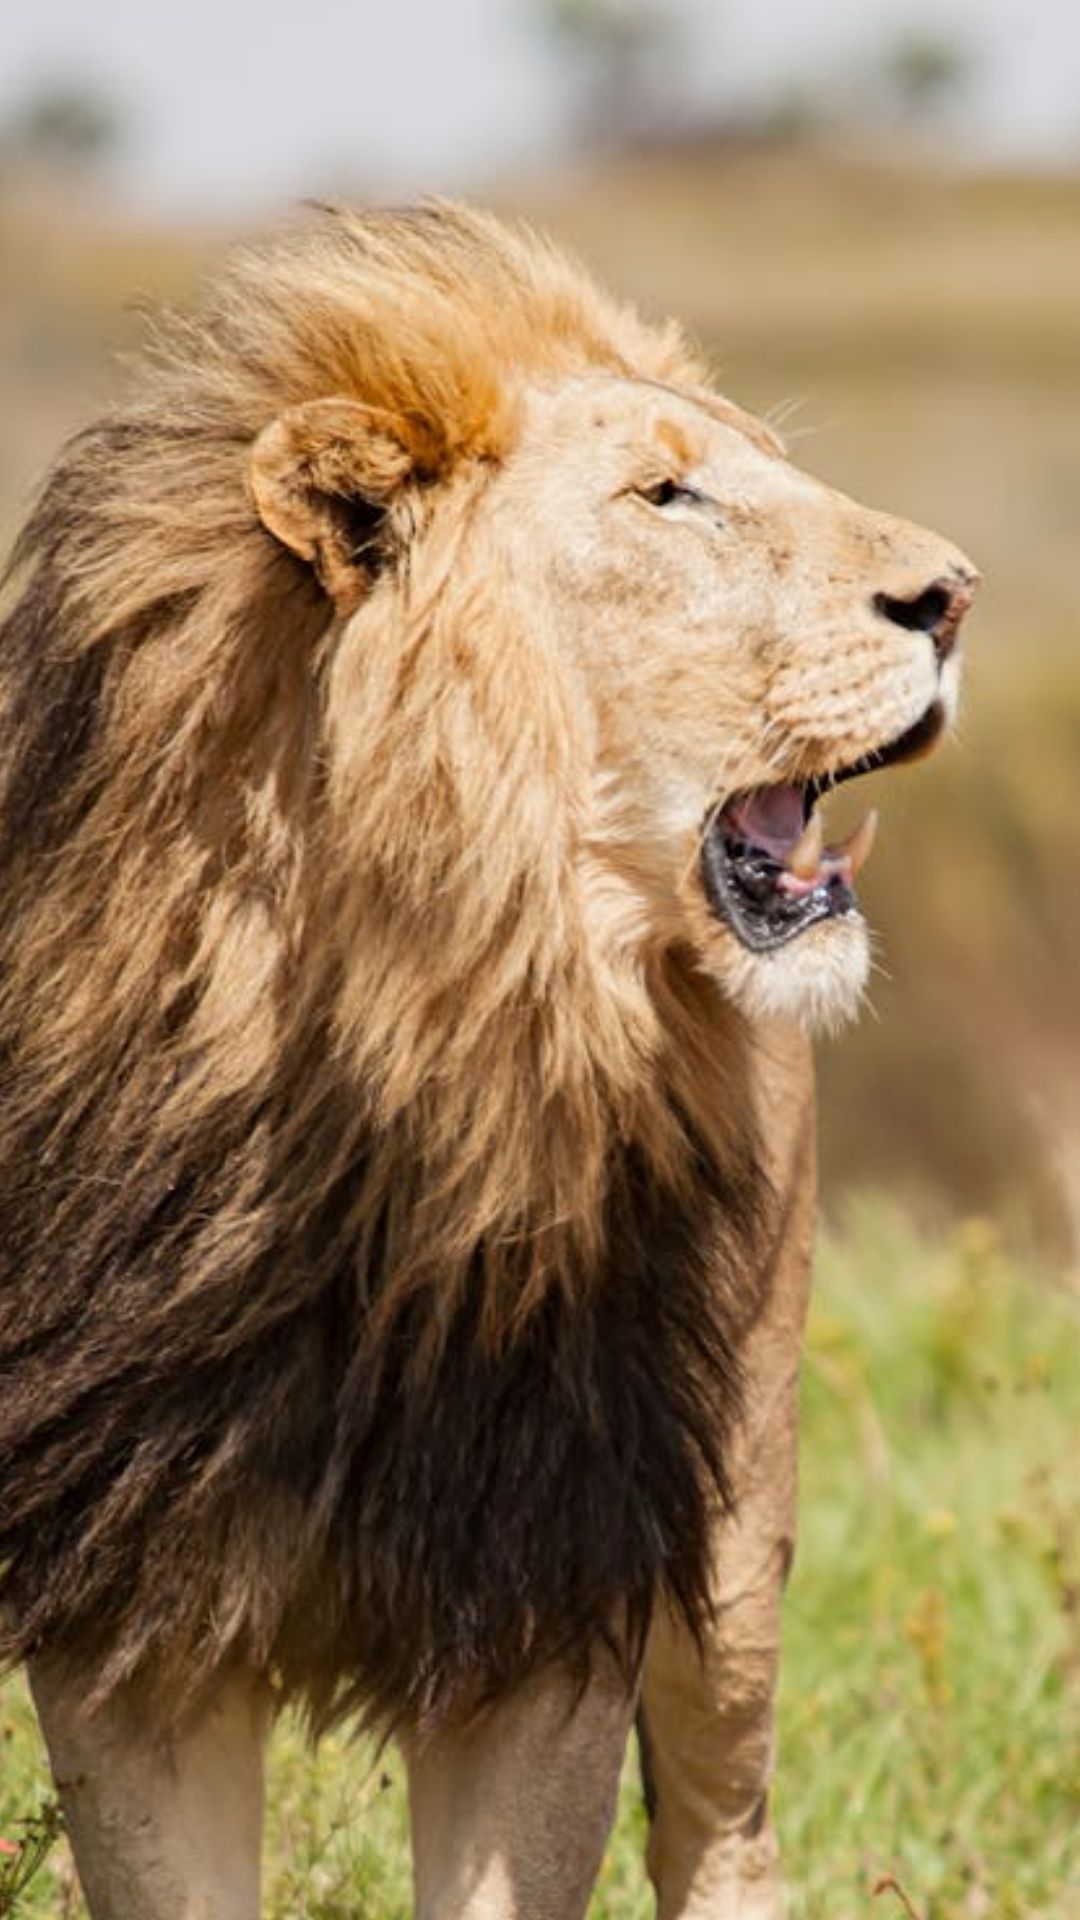 शेर, बाघ, चीता और तेंदुआ में क्या है अंतर, जान लीजिए 